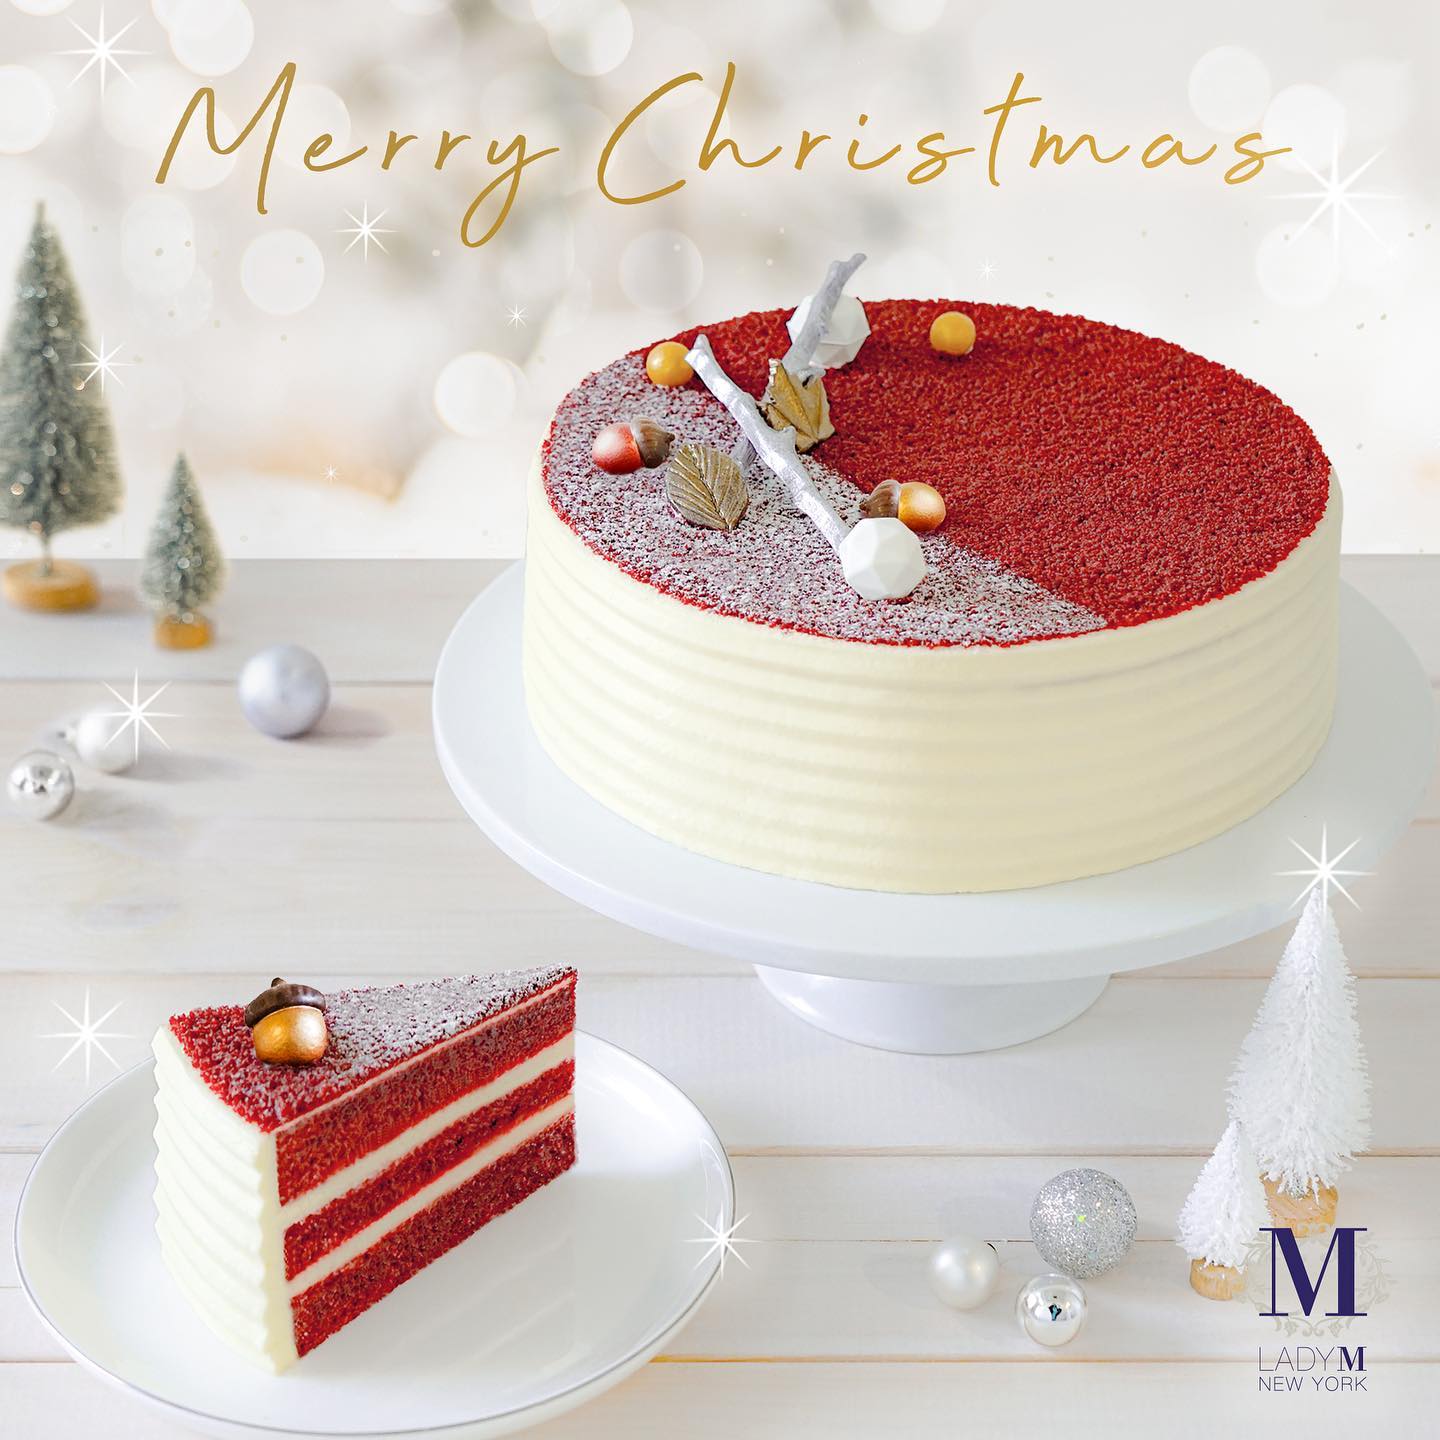 今個聖誕，就讓 Lady M 的蛋糕為你和親朋摯愛帶來一點甜蜜，祝願各位度過平安幸福的節日時刻。